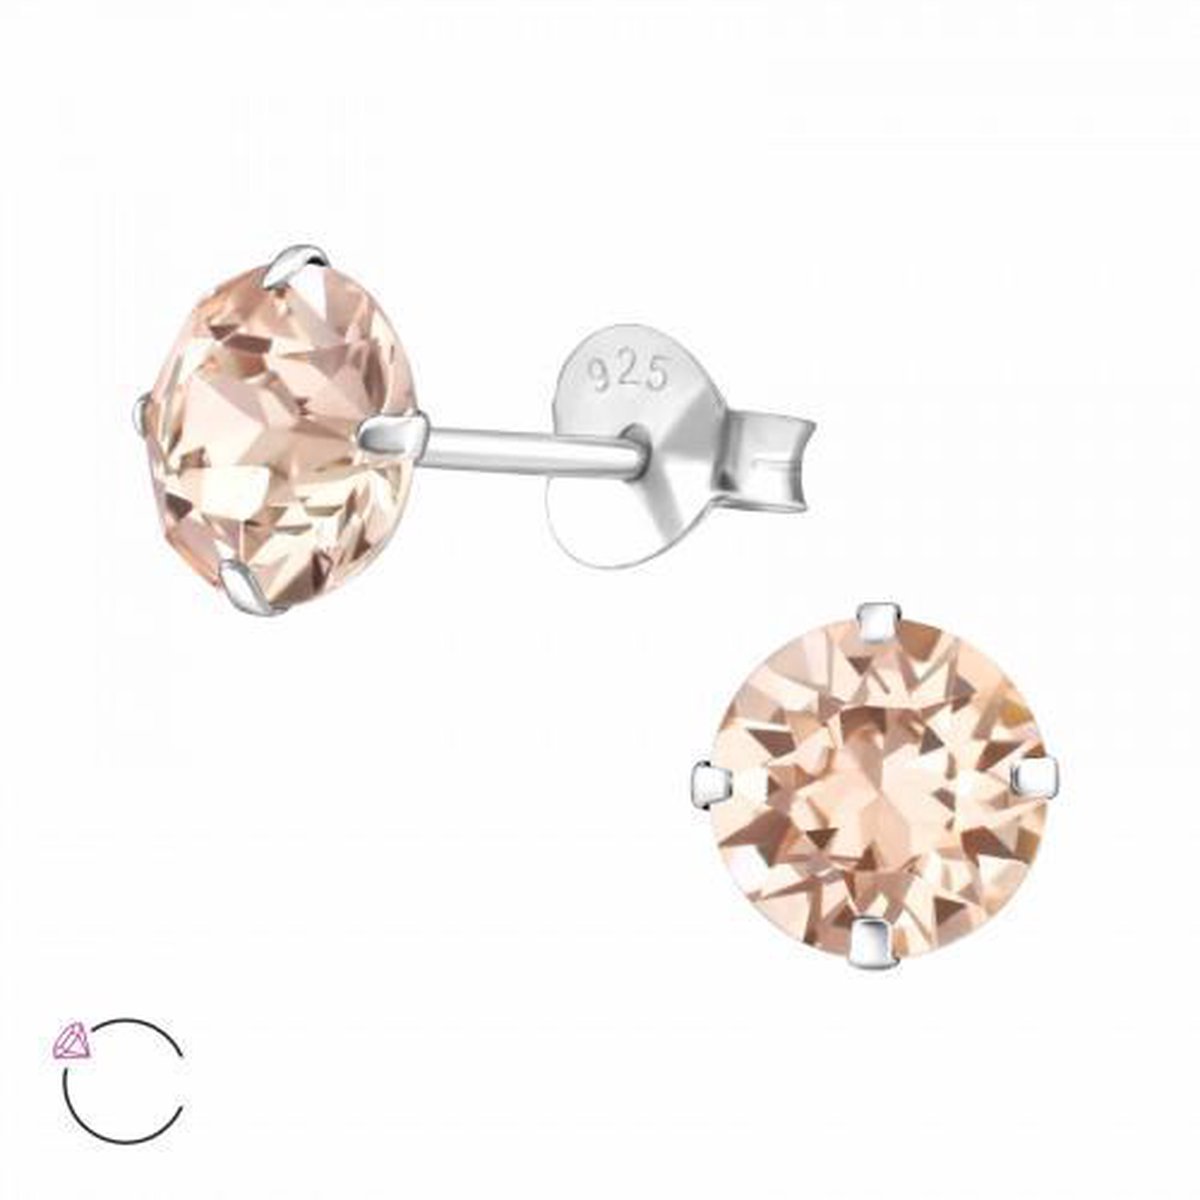 Zilveren oorbellen | Oorstekers | Zilveren oorstekers, ronde Swarovski kristal